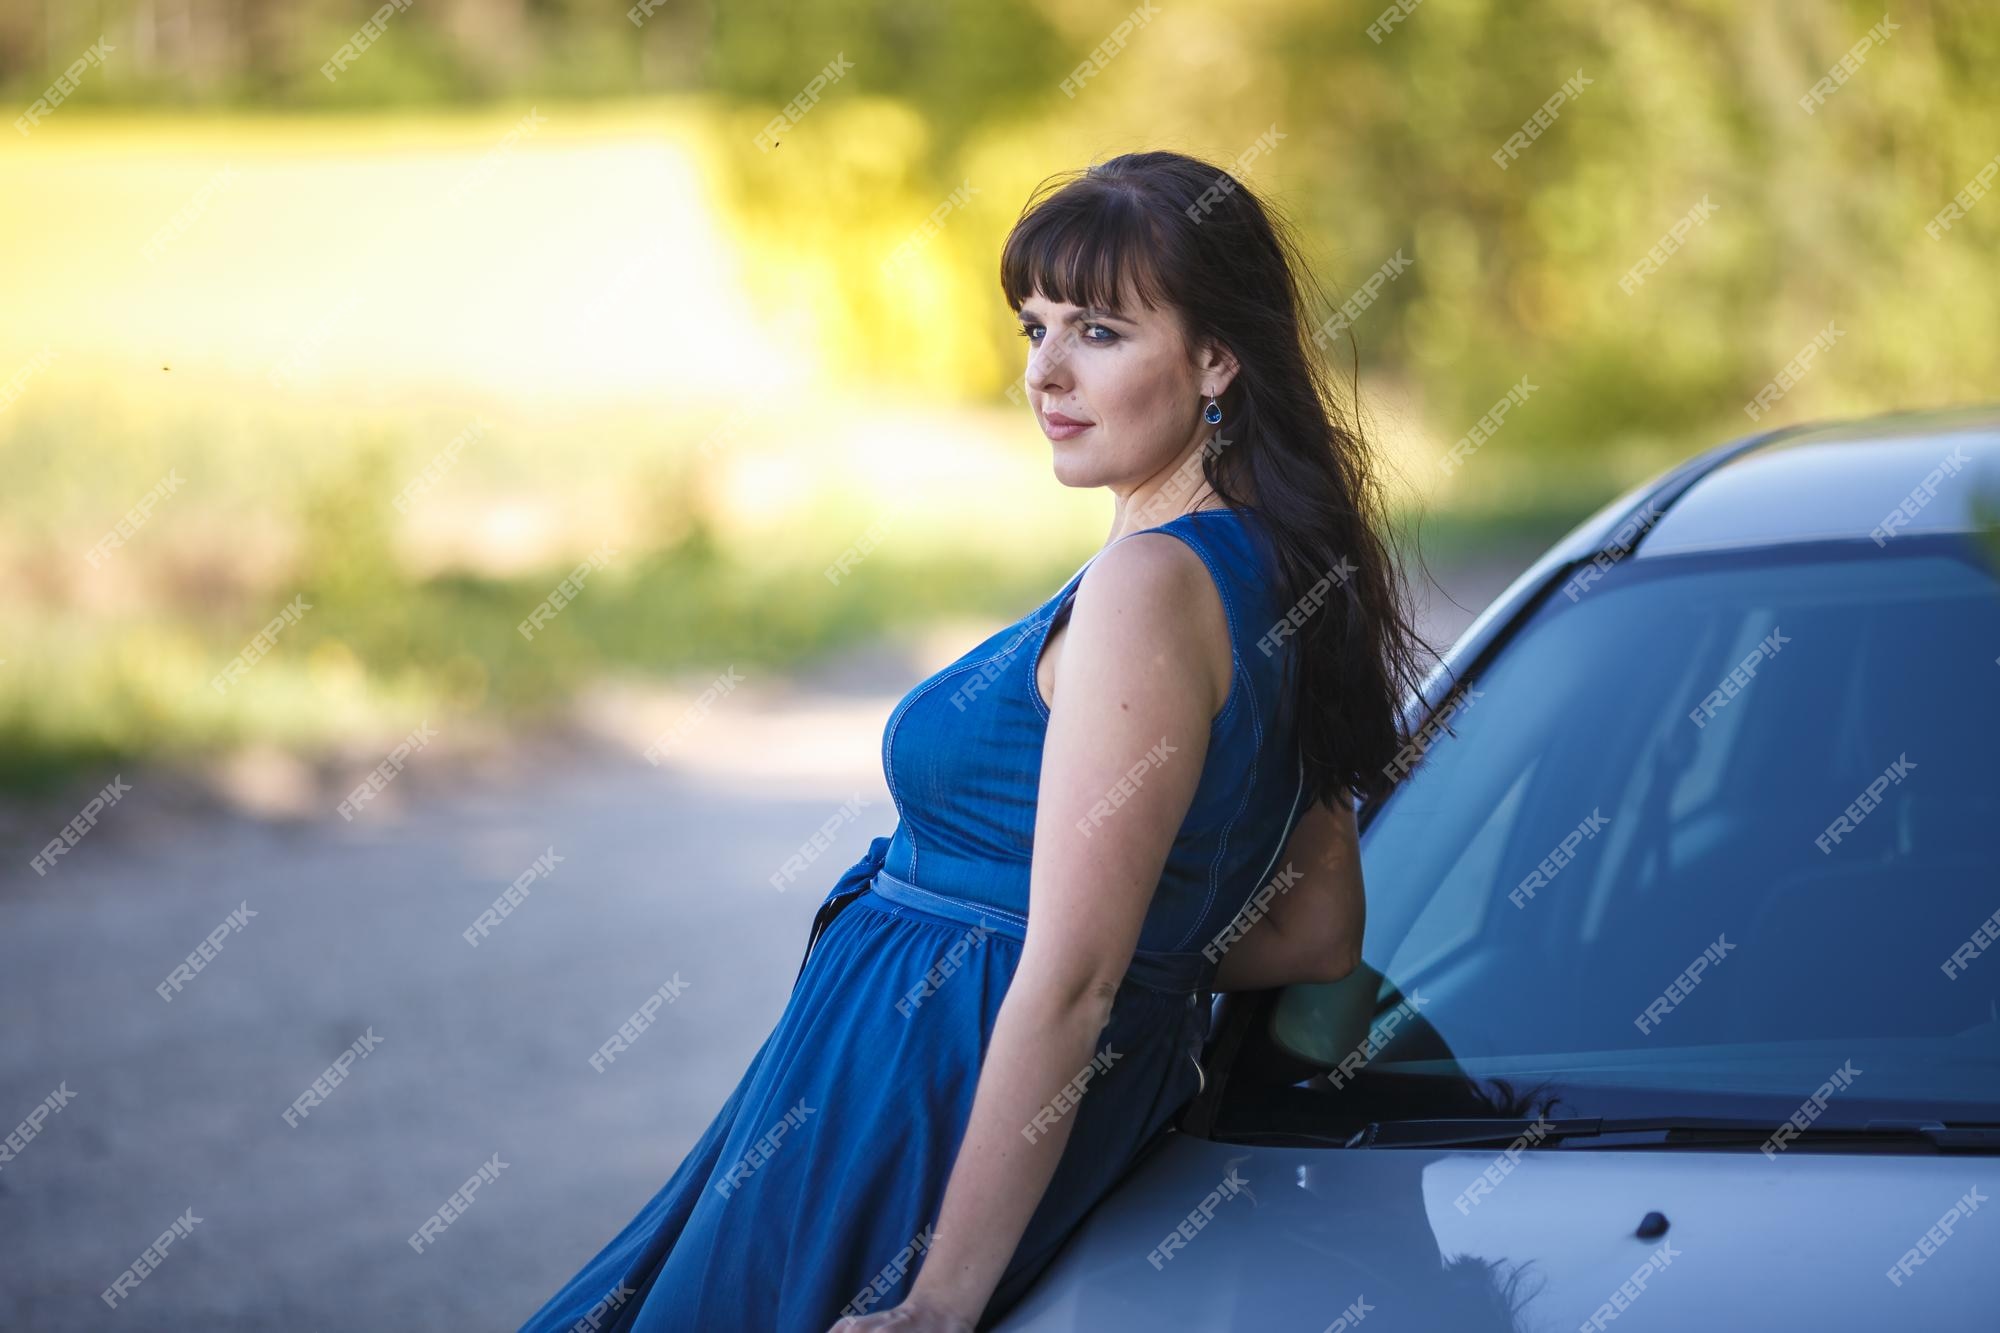 Best of Girl in blue dress in car